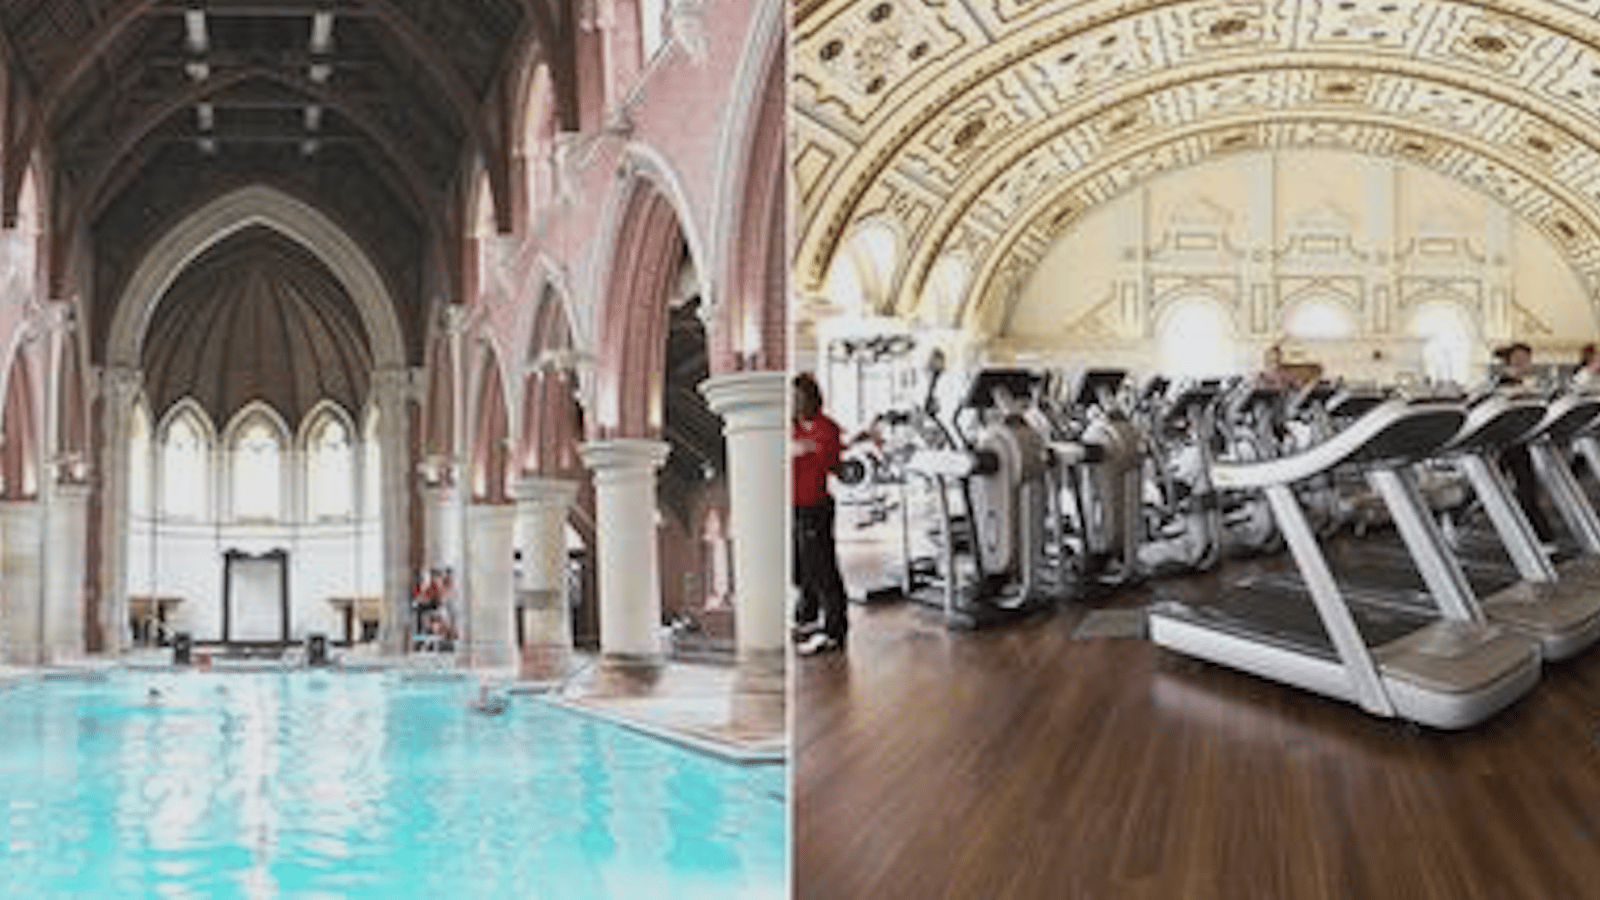 Une église gothique a été transformée en salle de sport exceptionelle